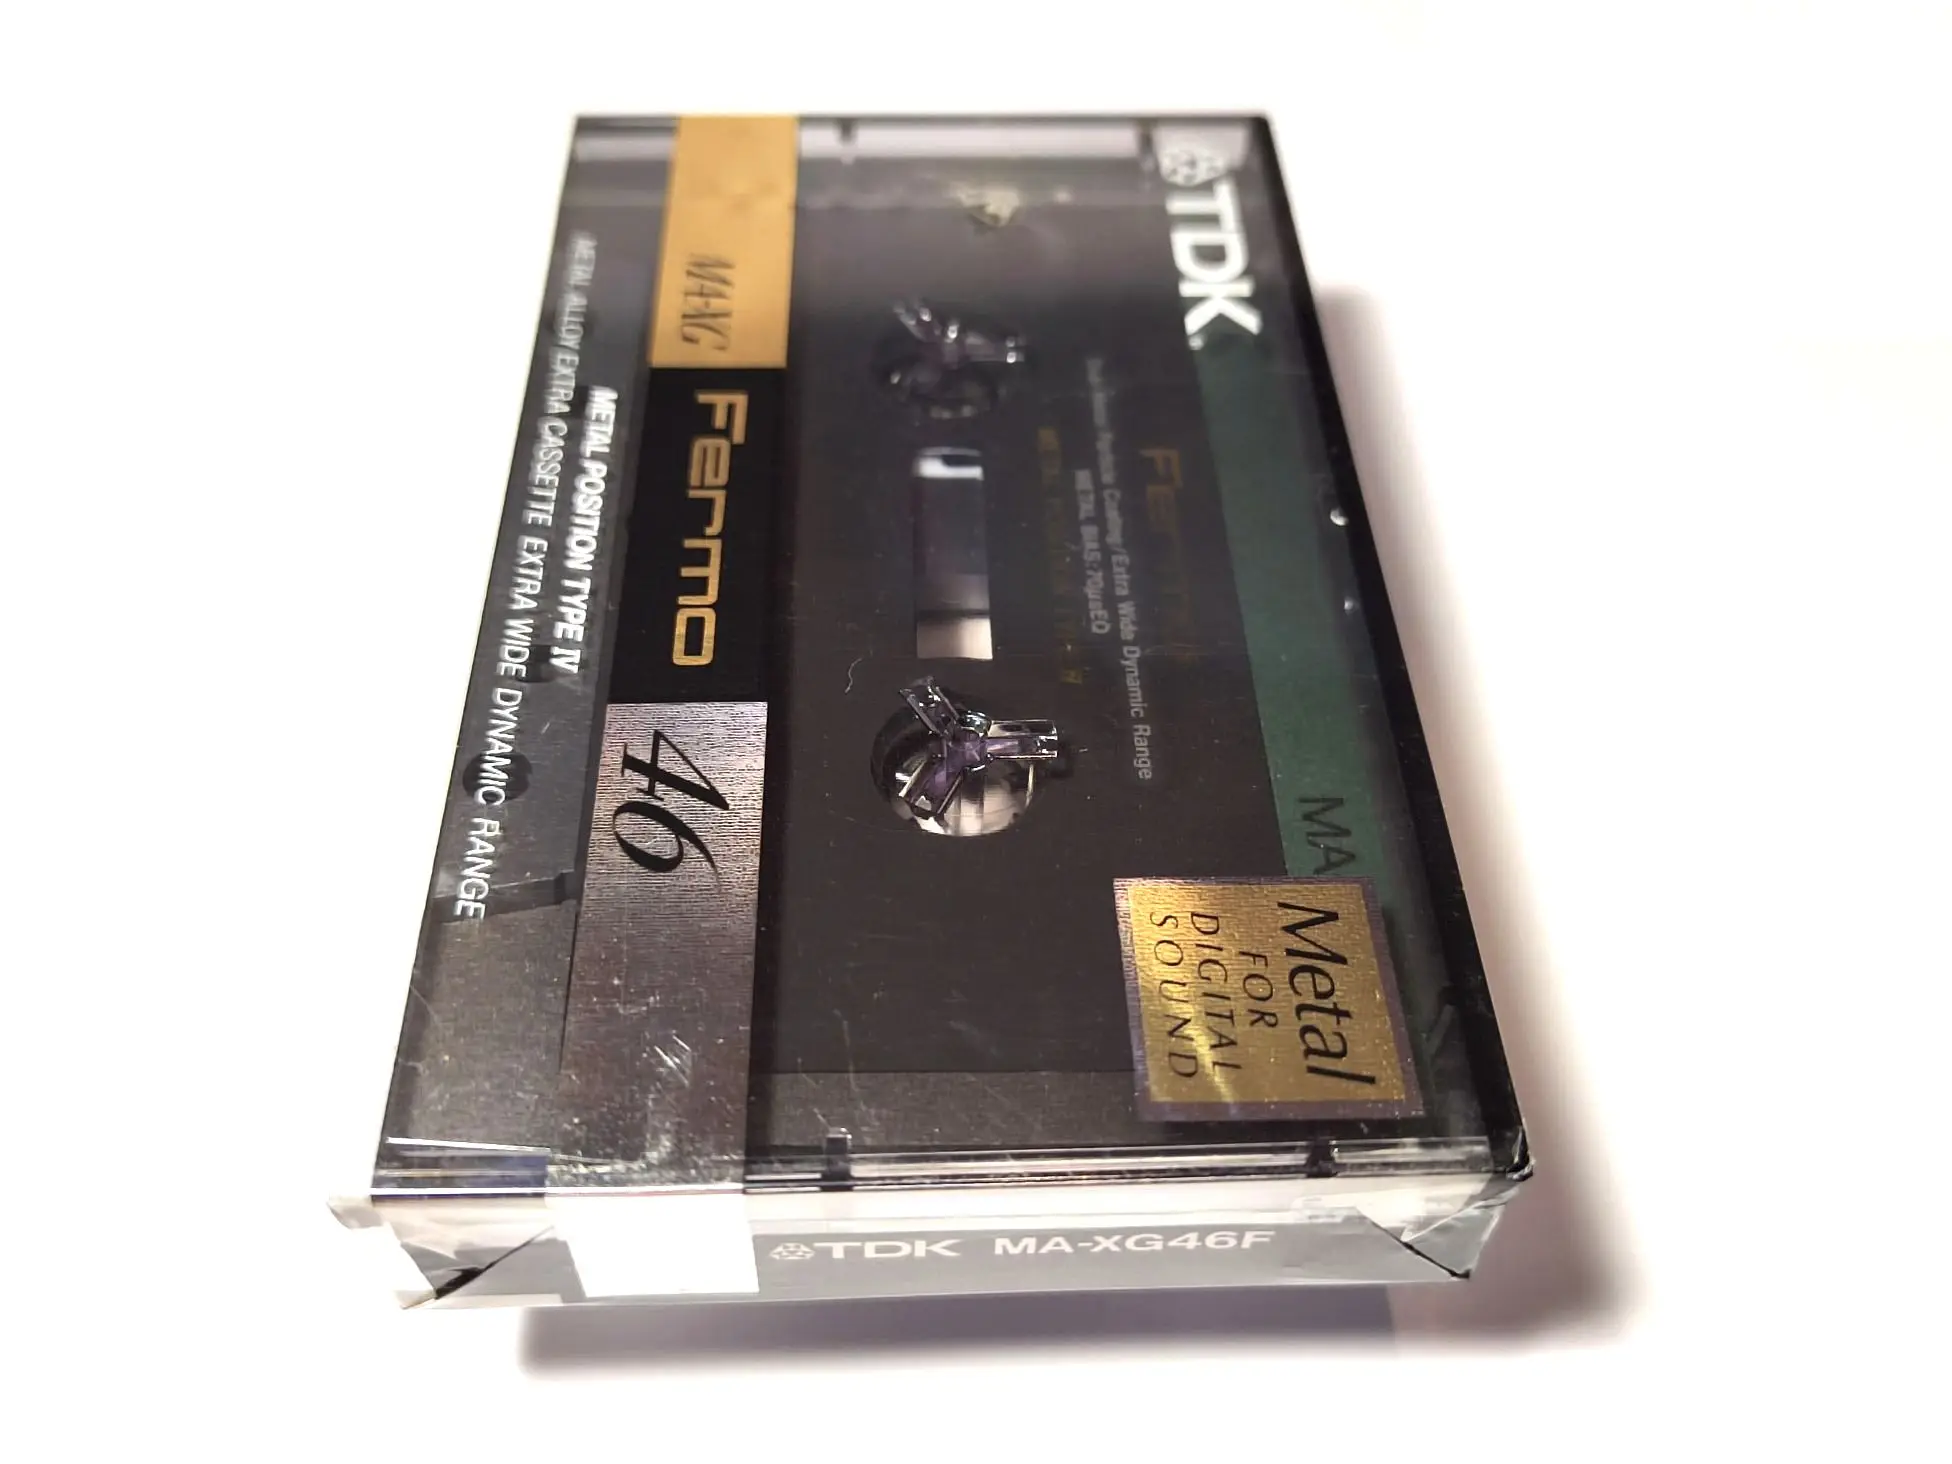 Audio cassette TDK MA-XG 46 Fermo